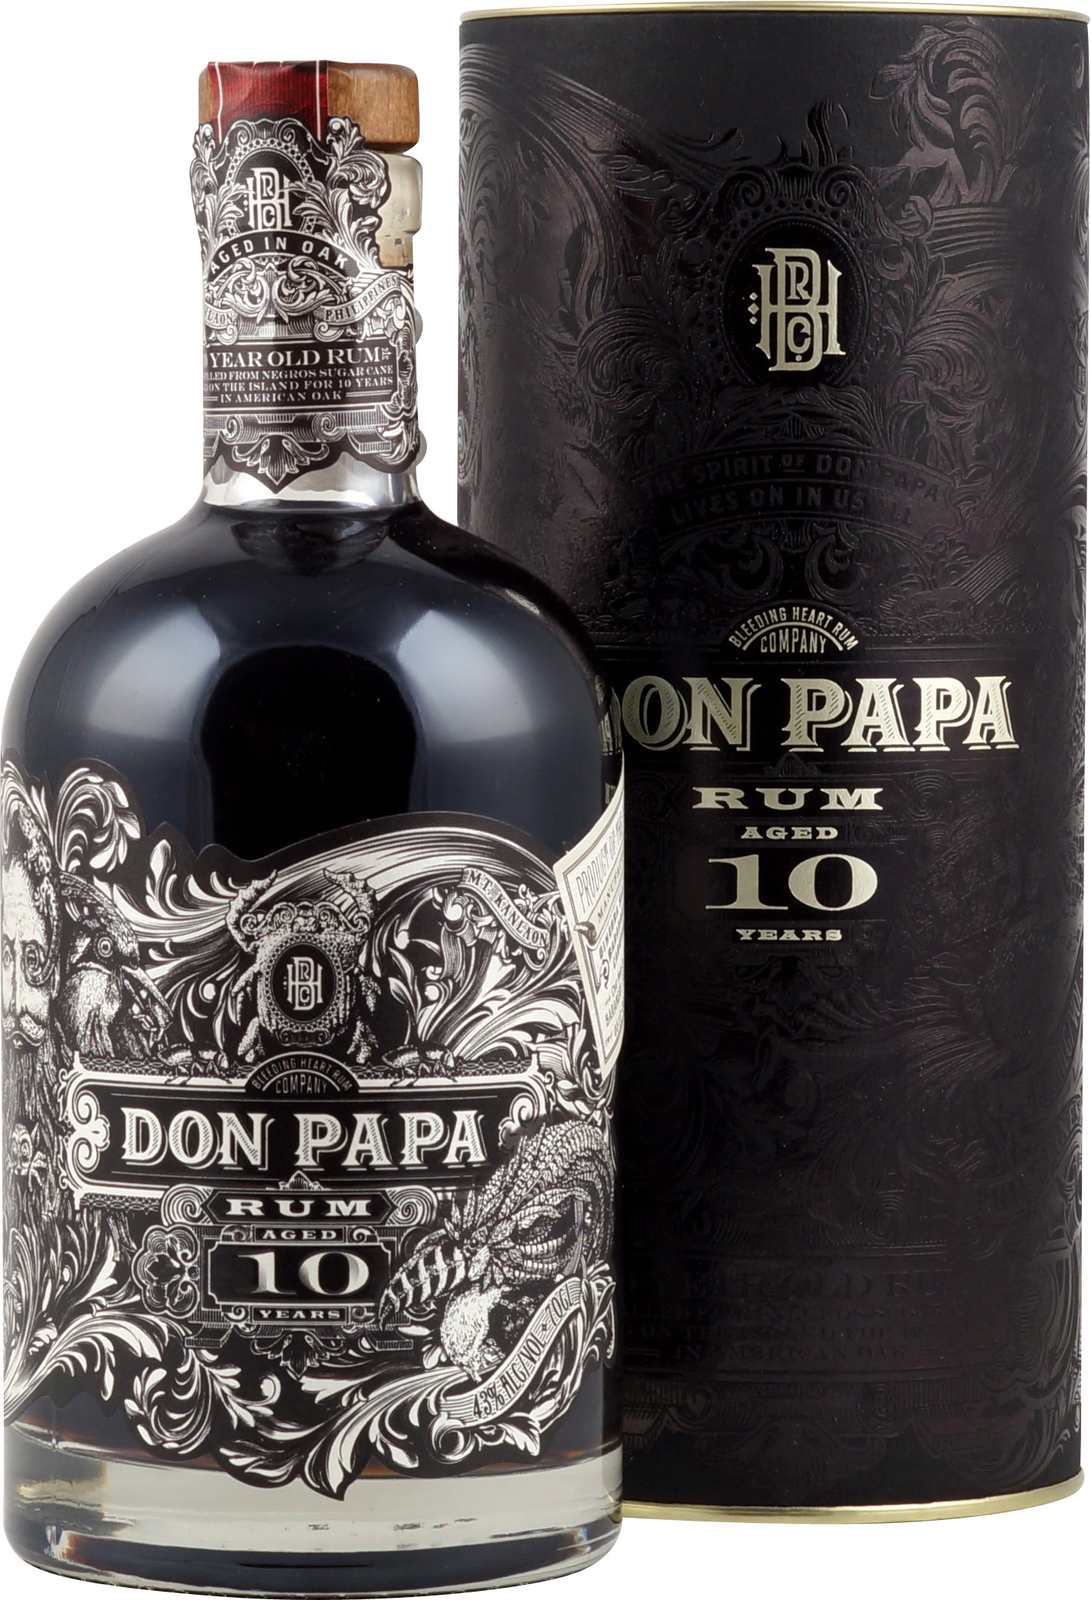 Don Papa Rum - Gelagerter % Vol. Jahre 43 10 mit Rum de